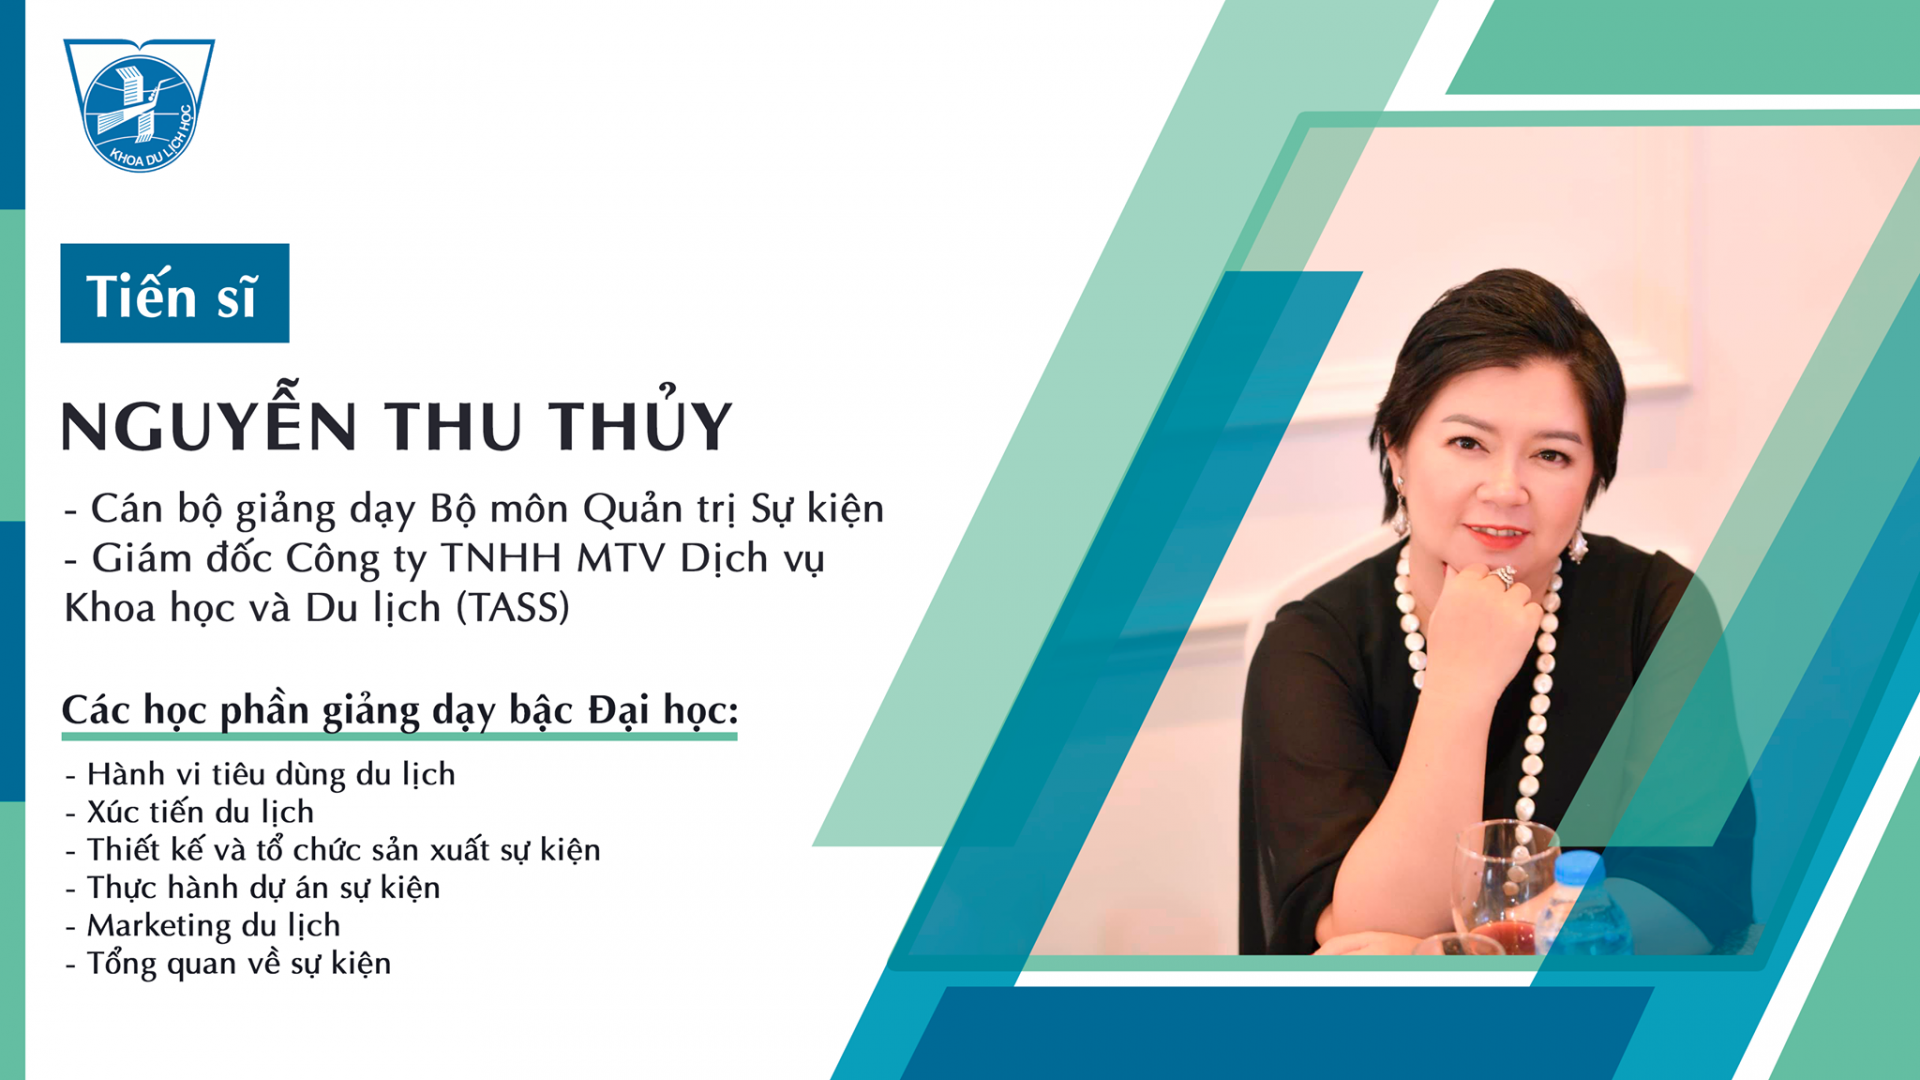 TS. Nguyễn Thu Thủy